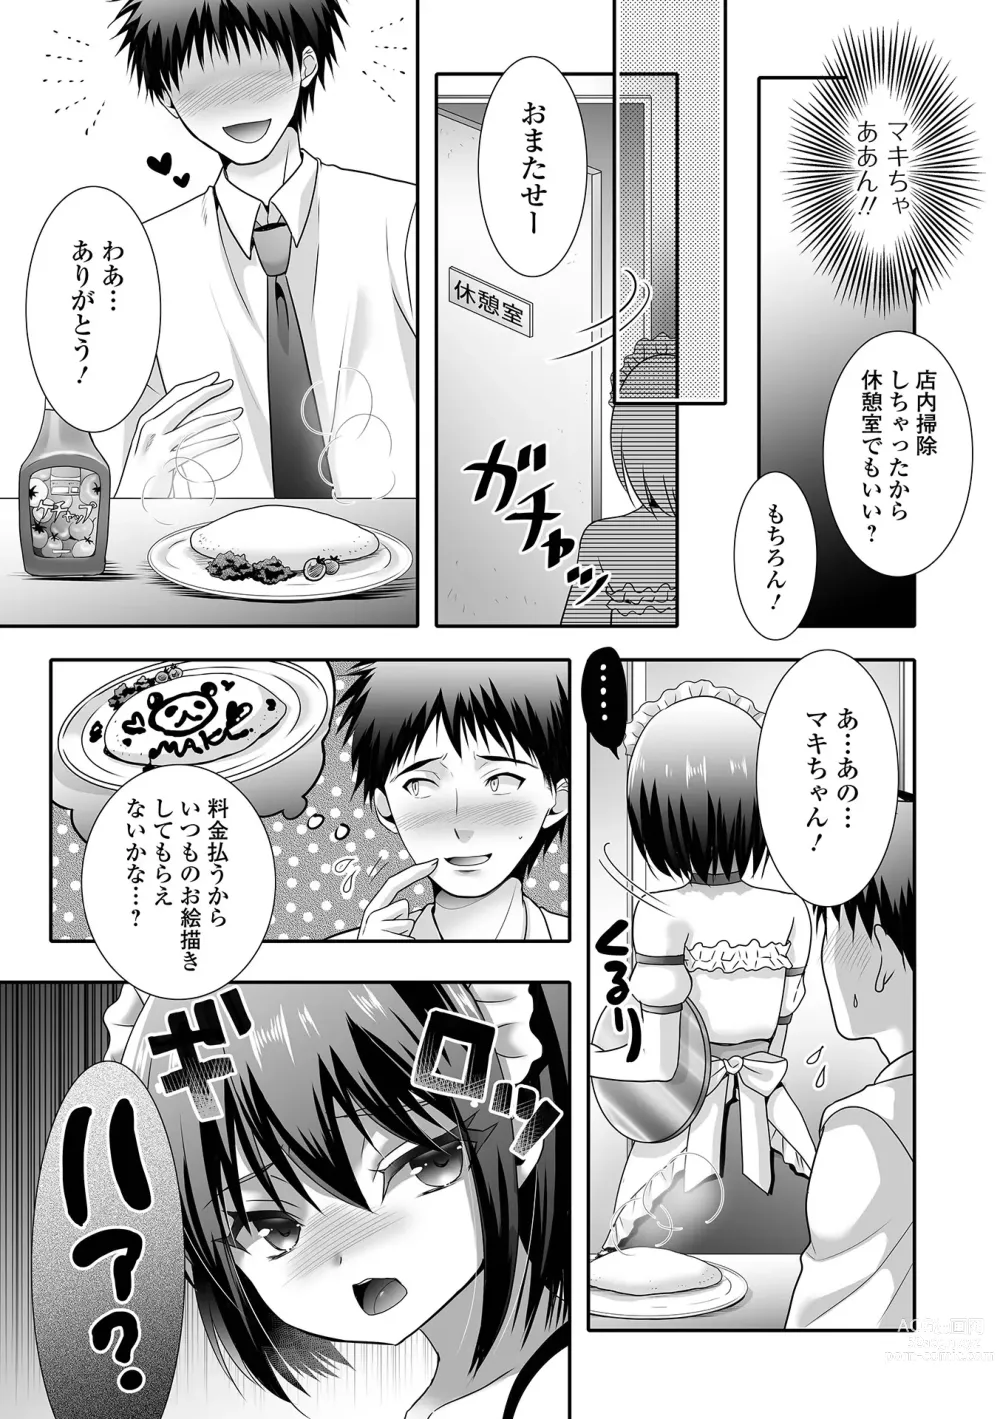 Page 21 of manga Gekkan Web Otoko no Ko-llection! S Vol. 89